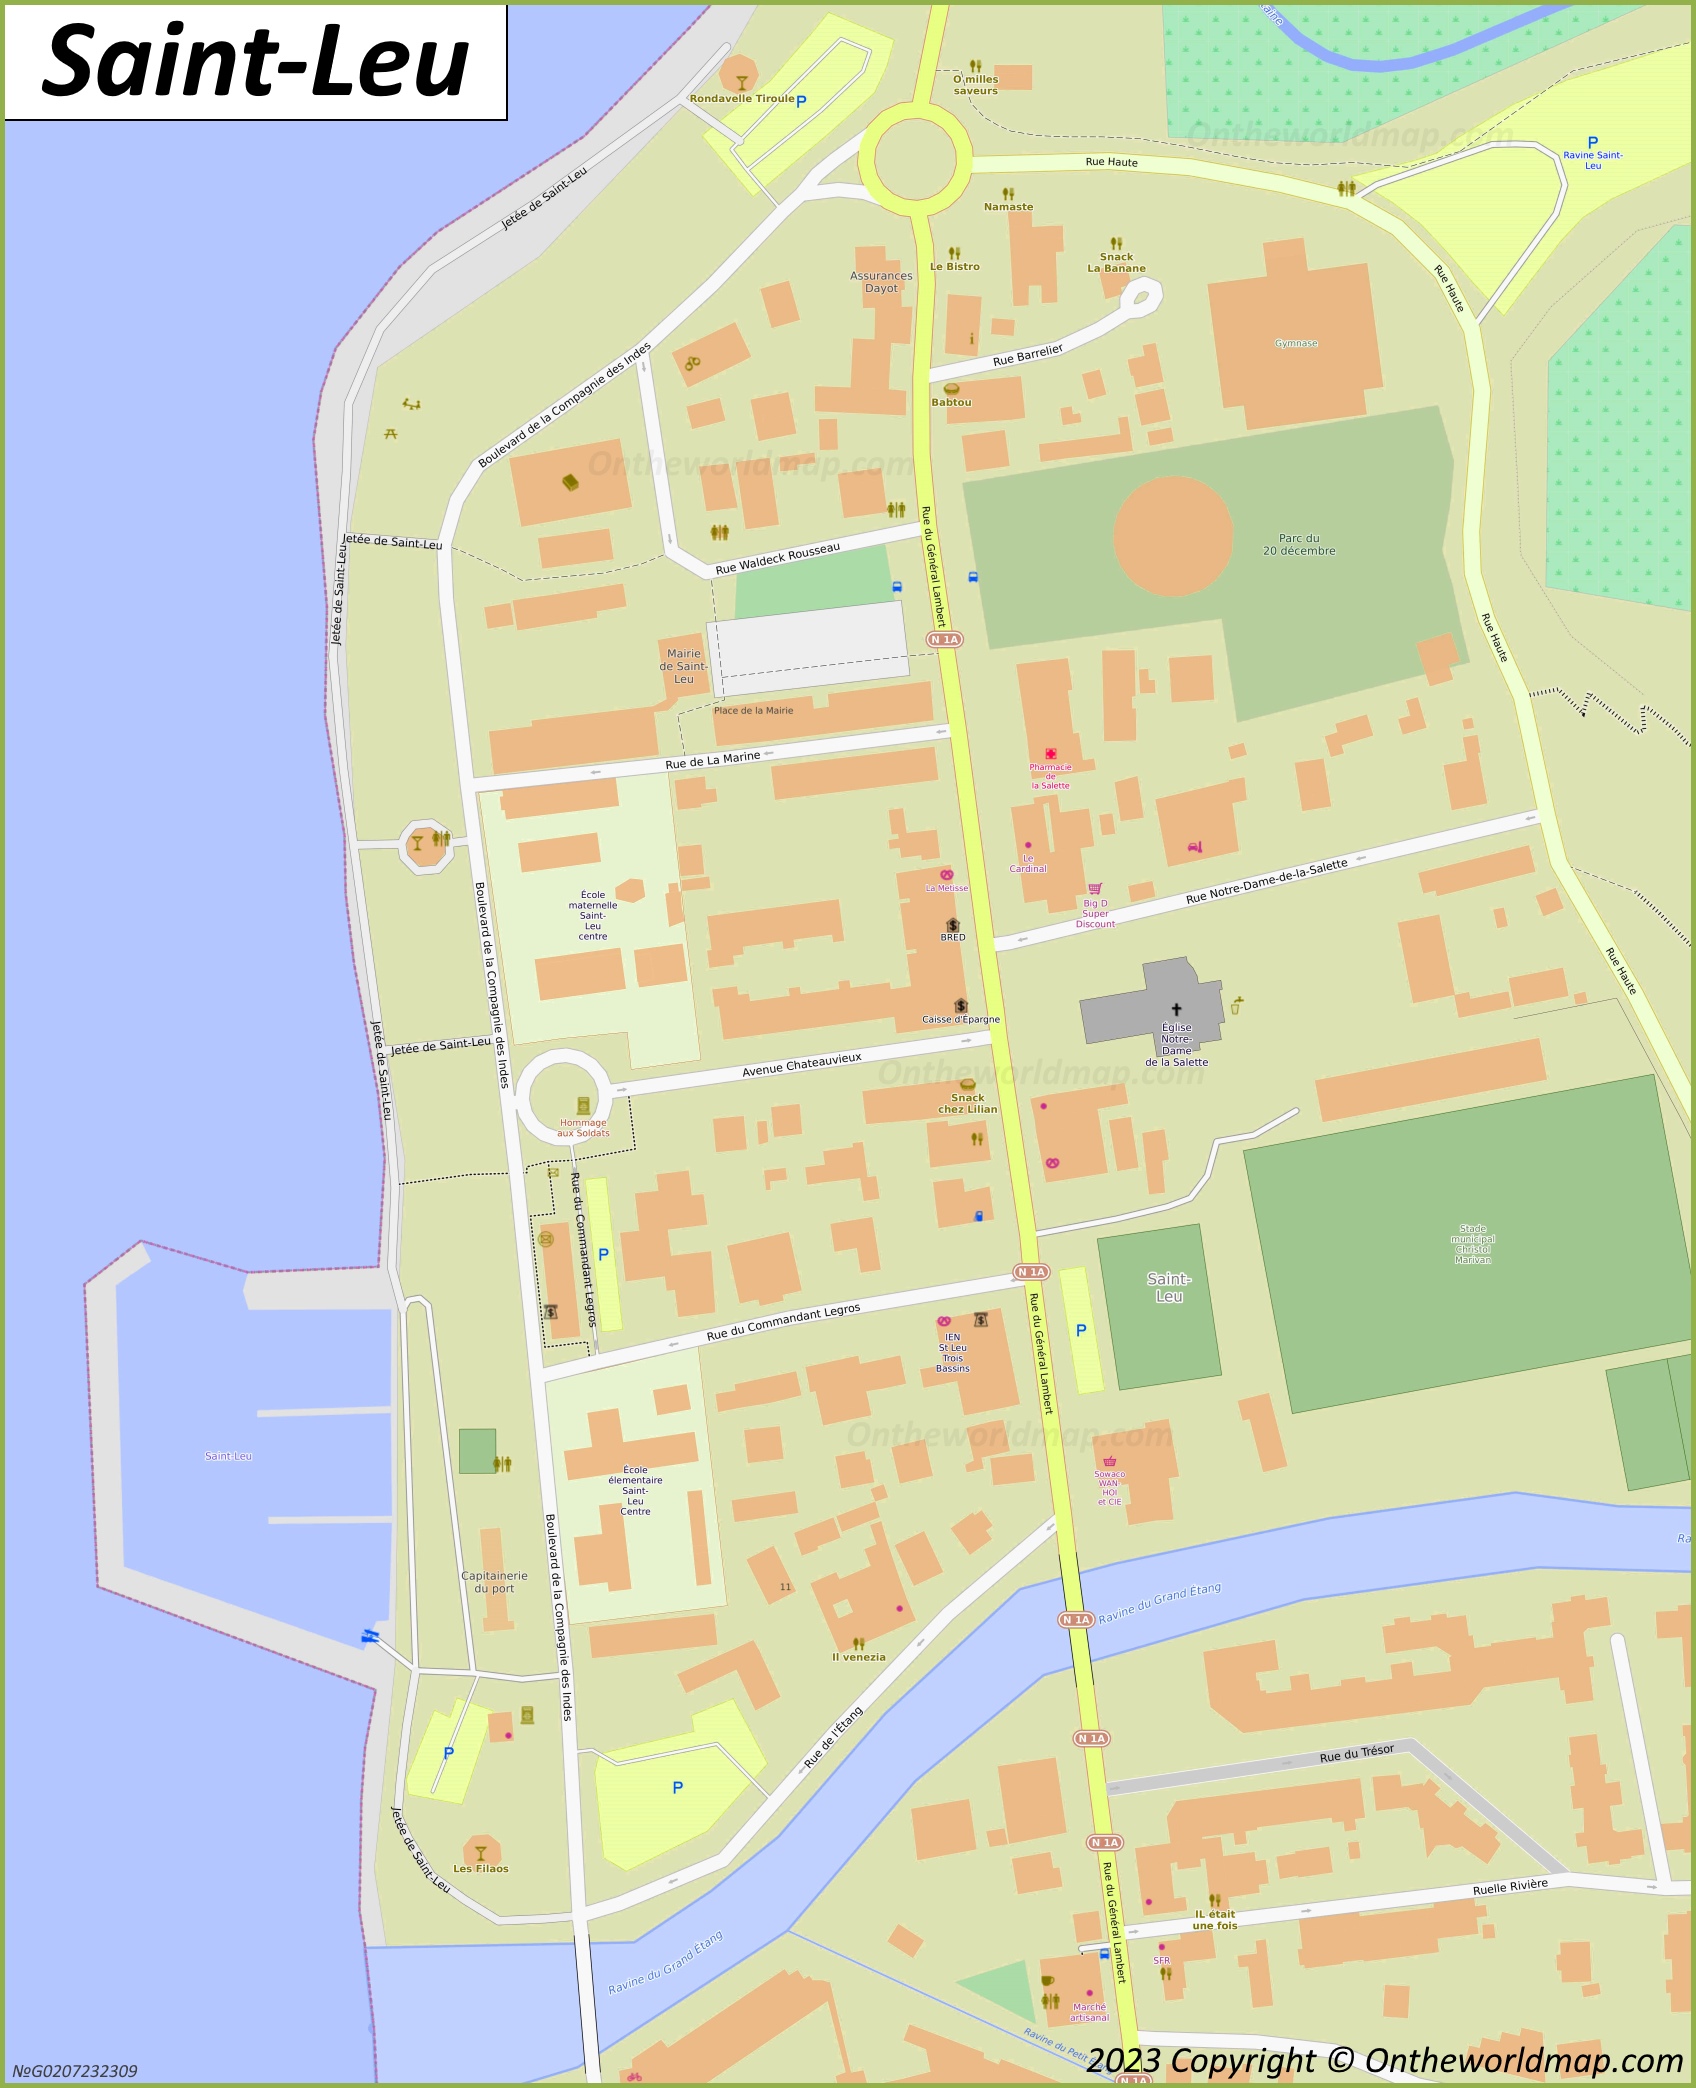 Saint-Leu City Centre Map